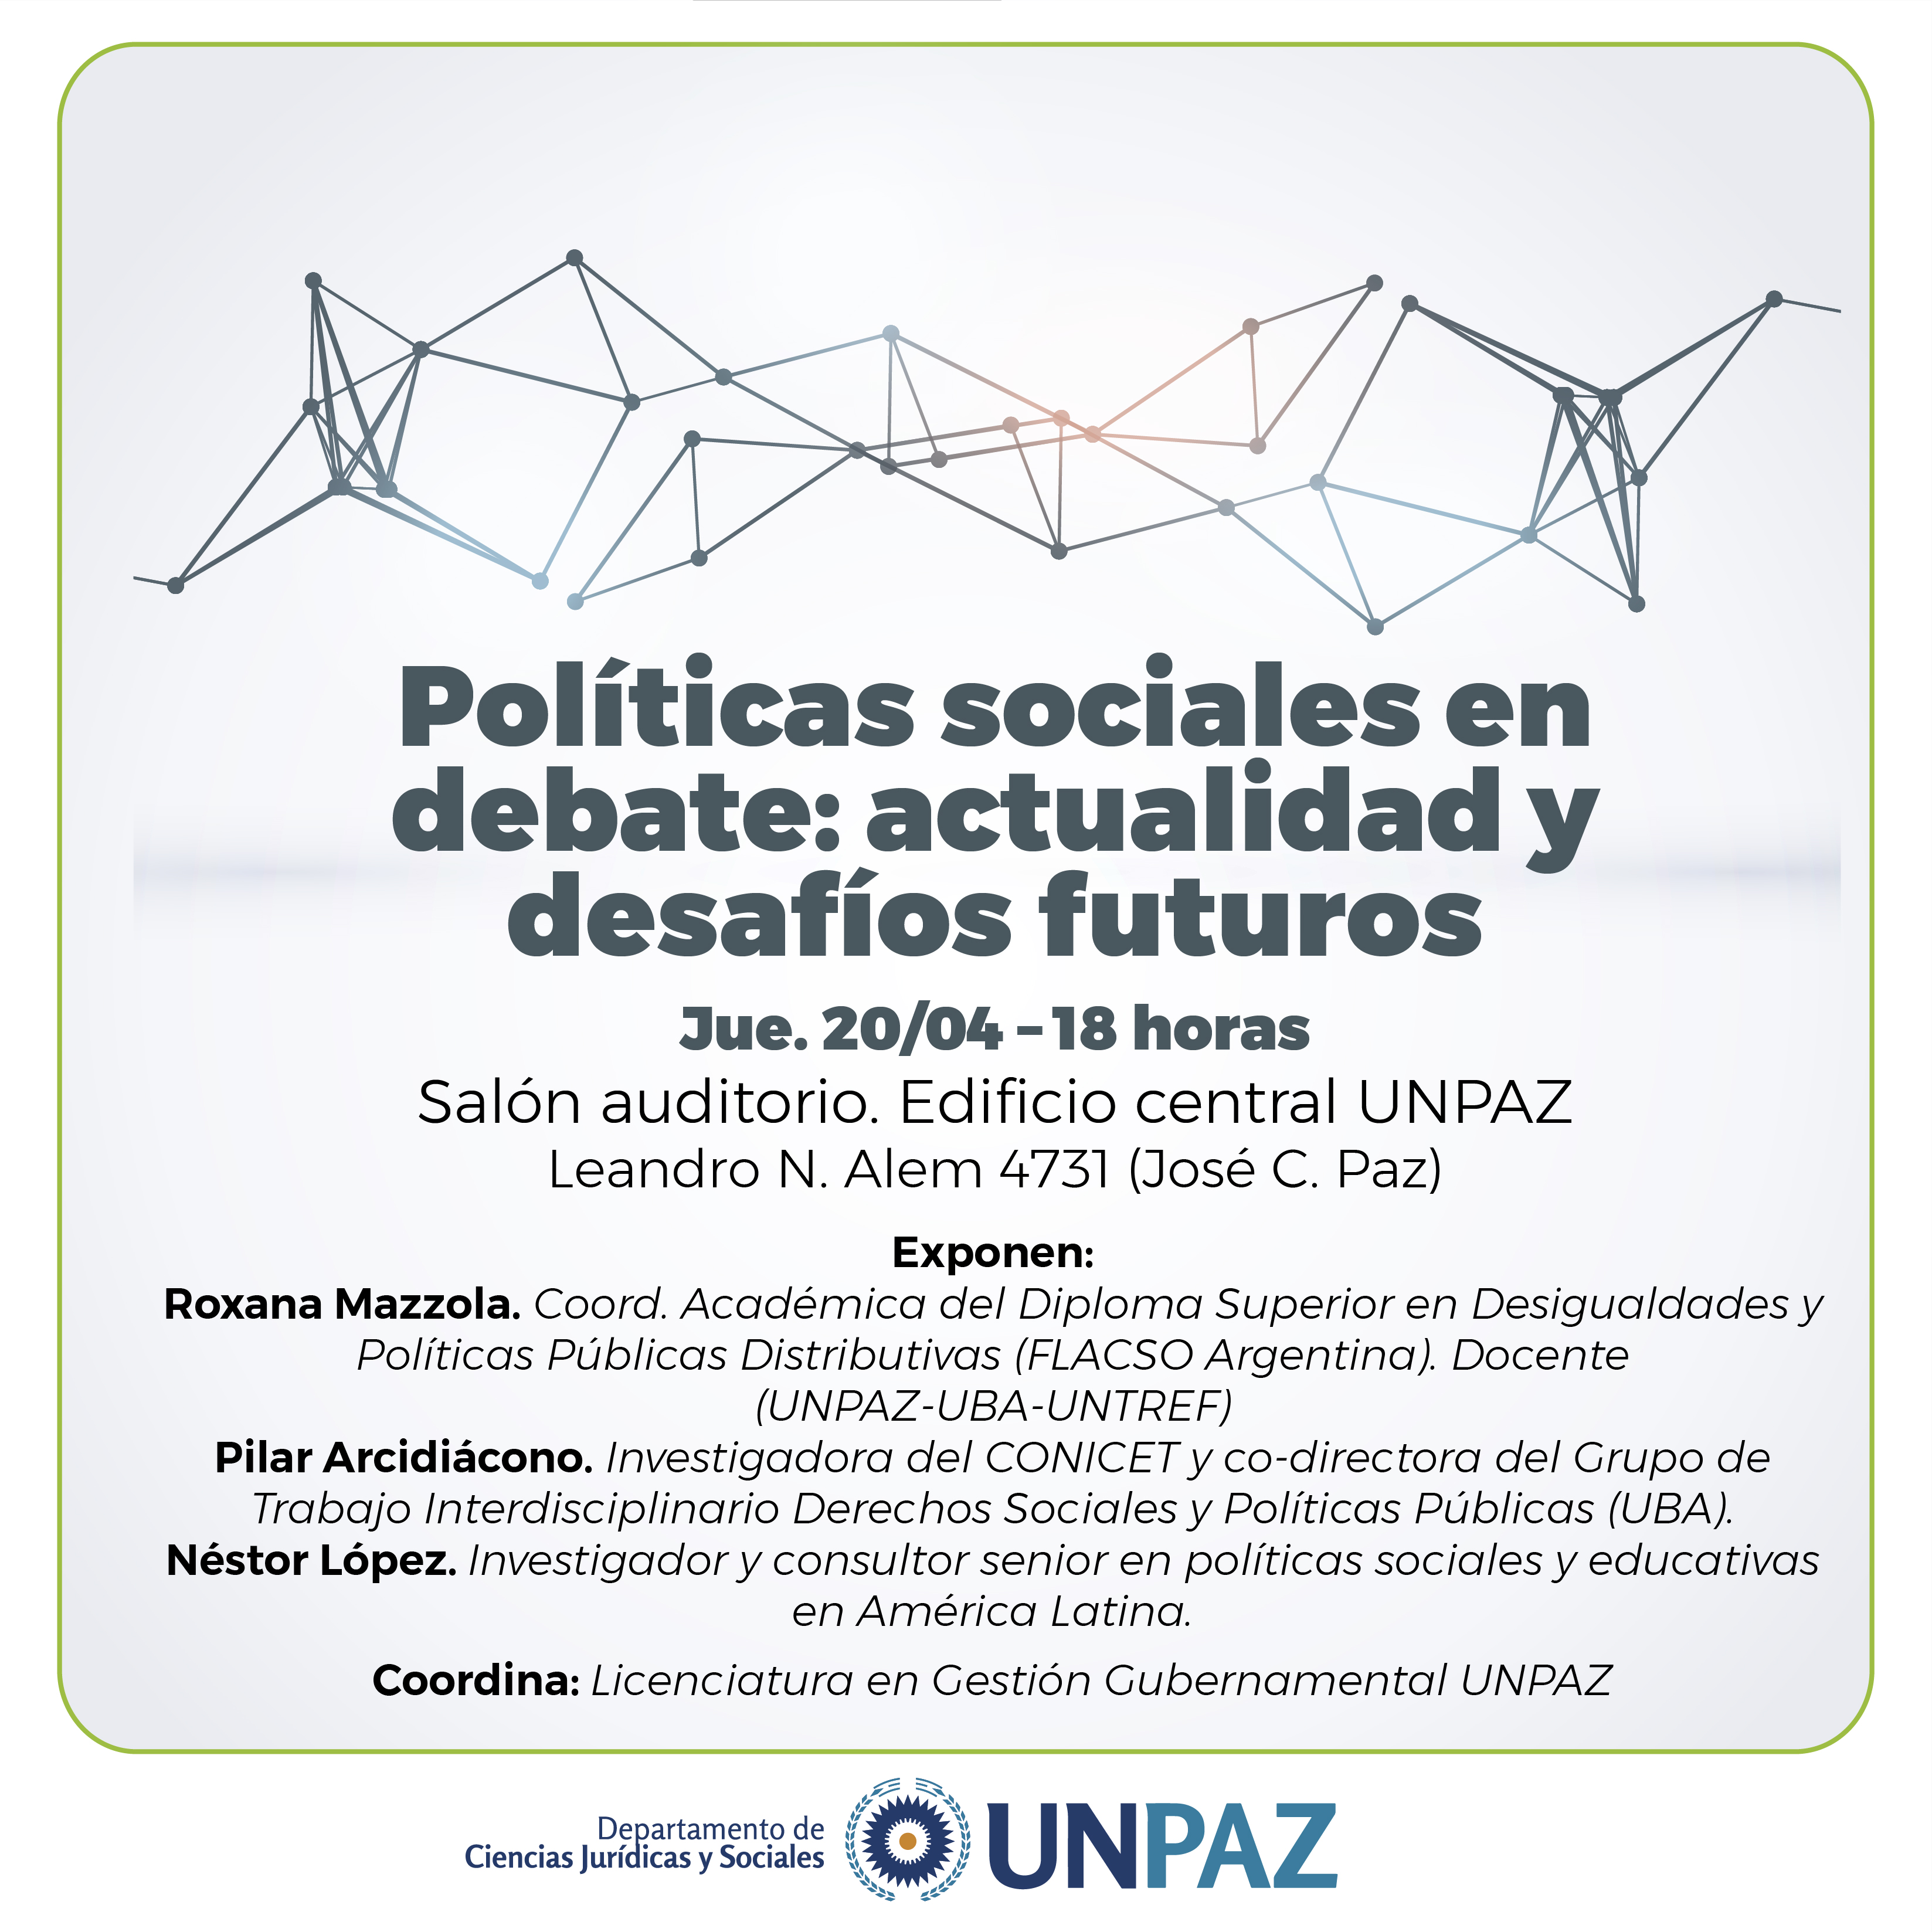 PANEL. Políticas sociales y debate: actualidad y desafíos futuros